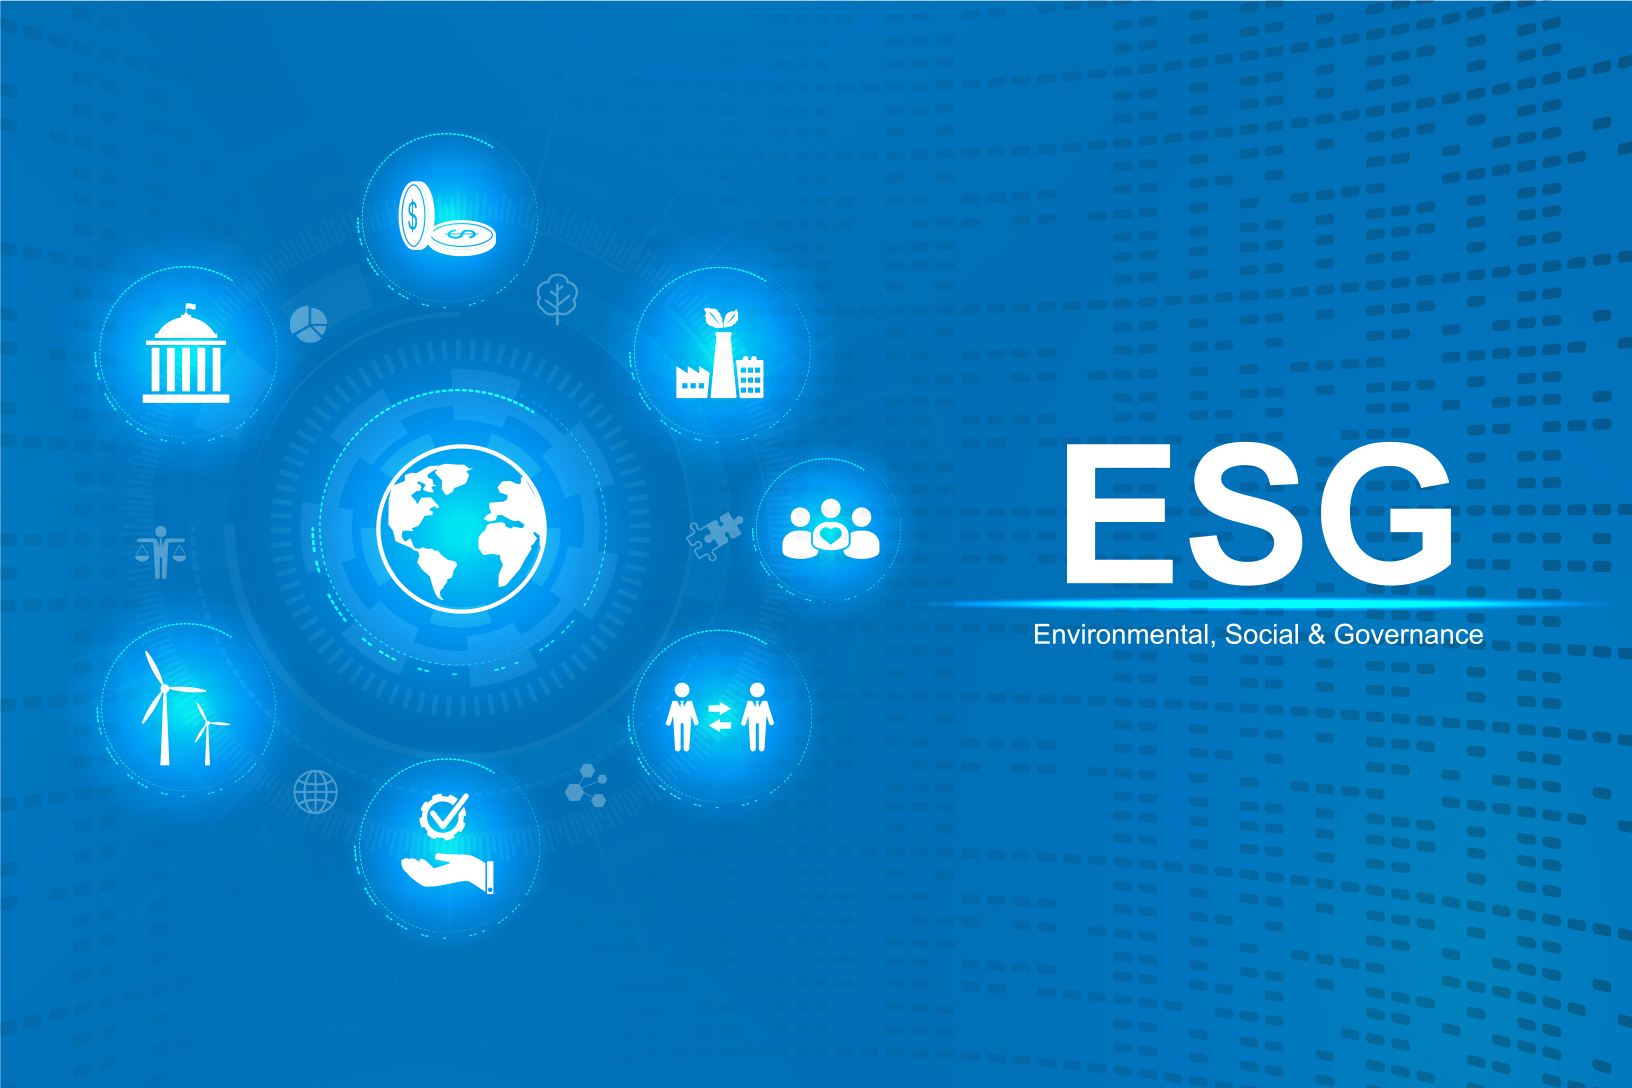 Transformacja cyfrowa — ESG, wykorzystanie outsourcingu IT w programowaniu dla inwestorów ESG